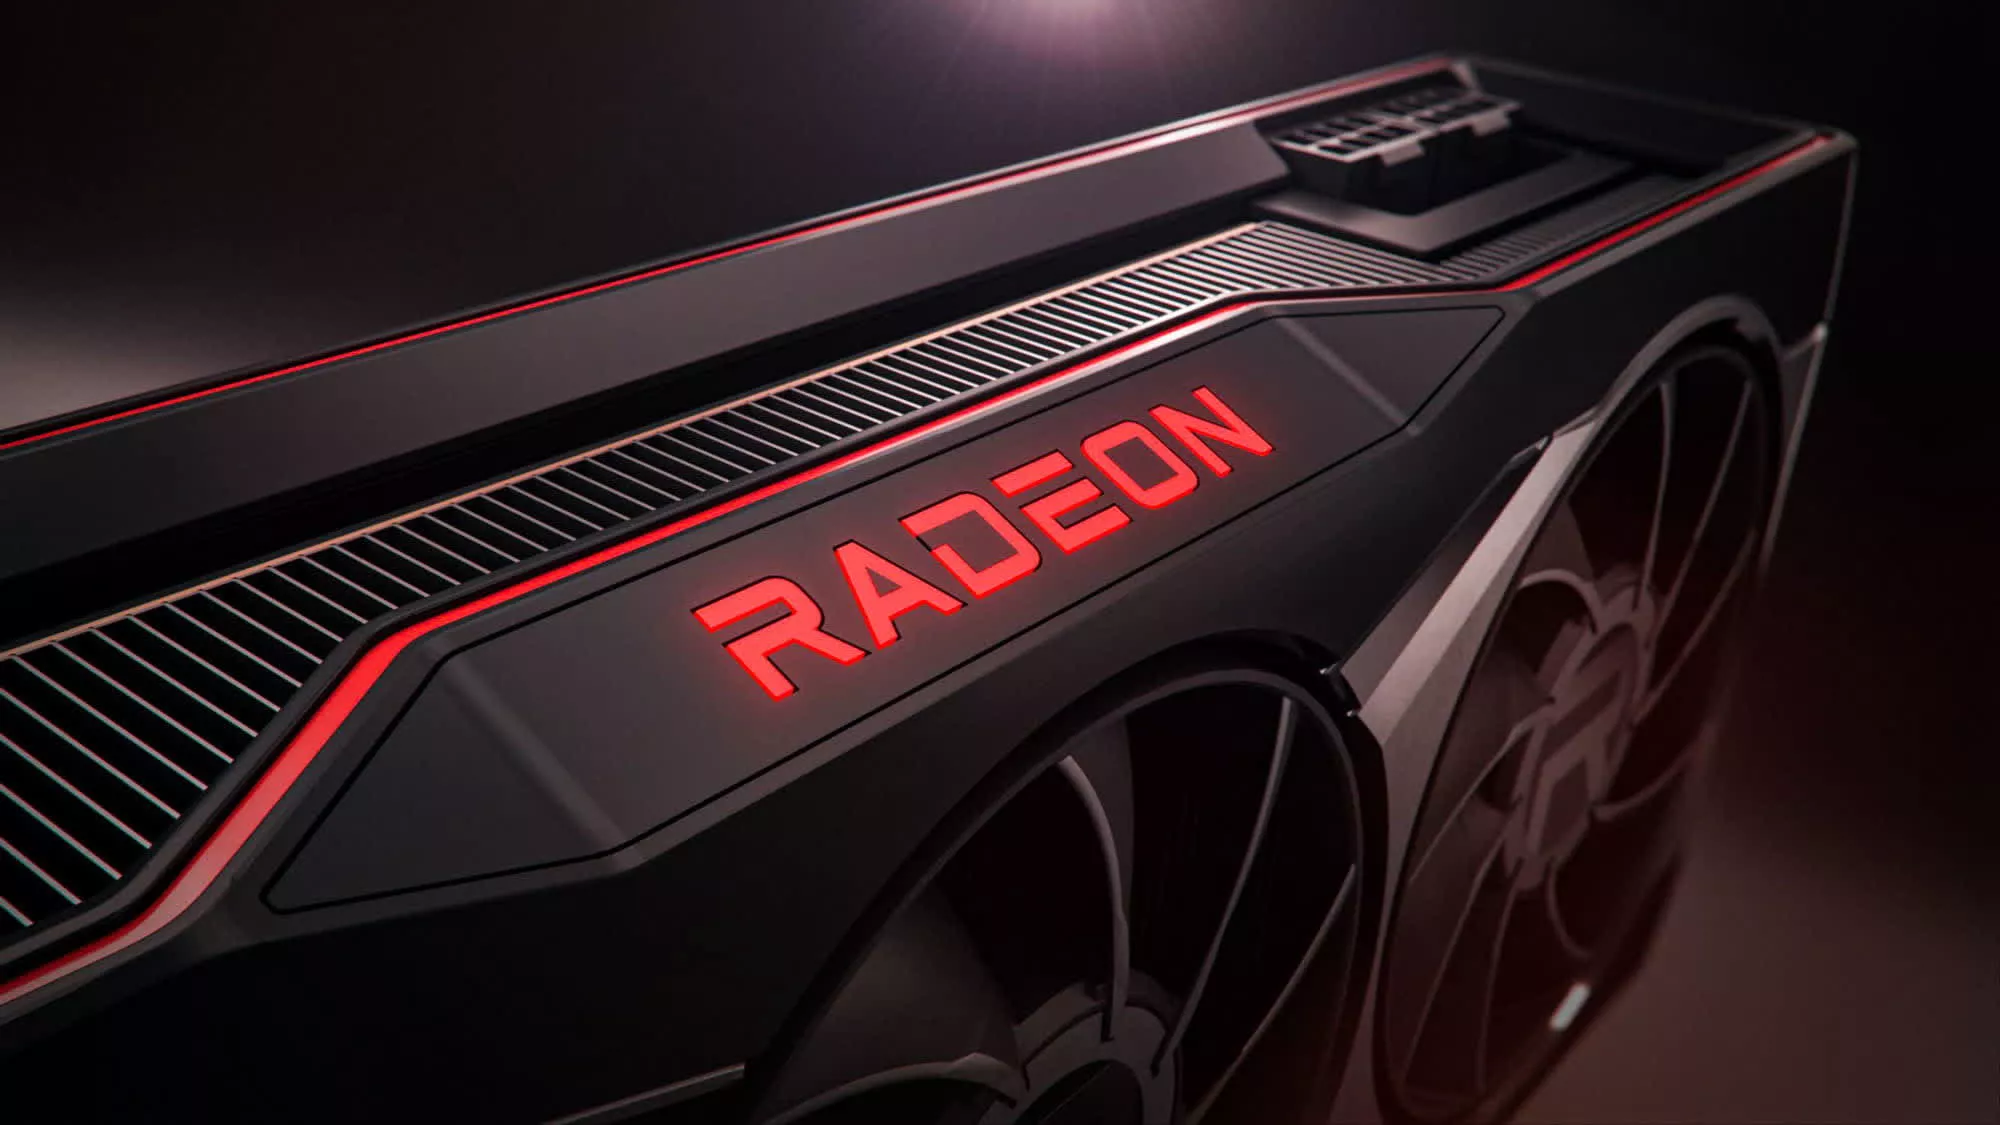 Znane są już sugerowane ceny kart graficznych AMD Radeon RX 6650 XT, RX 6750 i RX 6950 XT